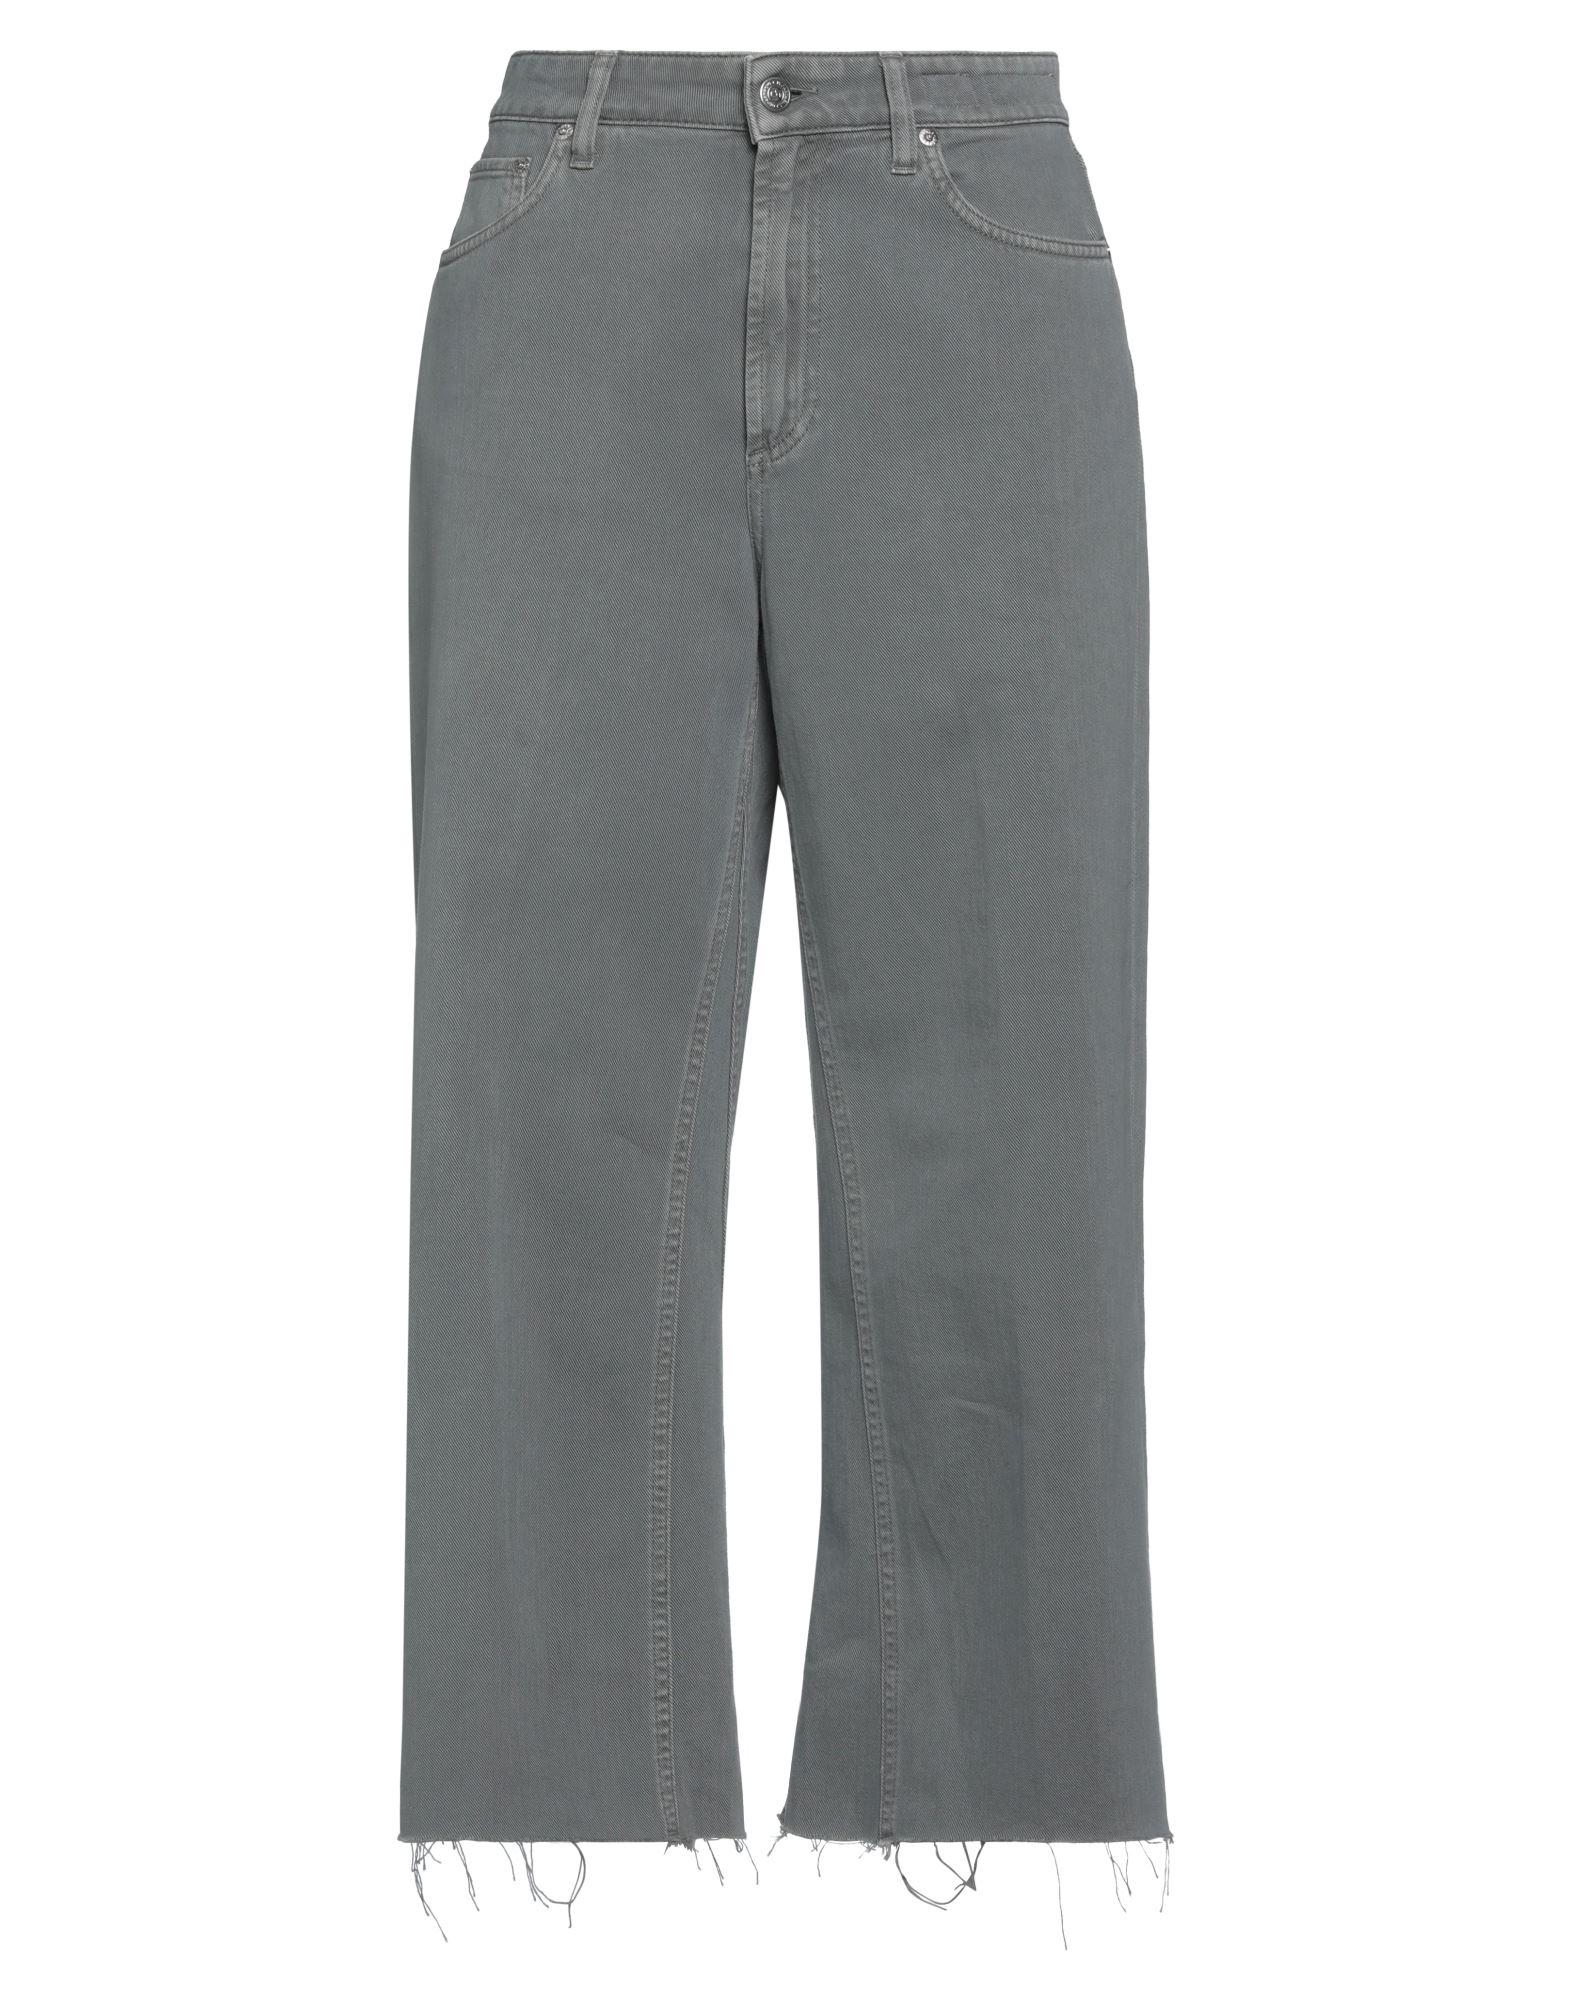 Department 5 Pants In Grey